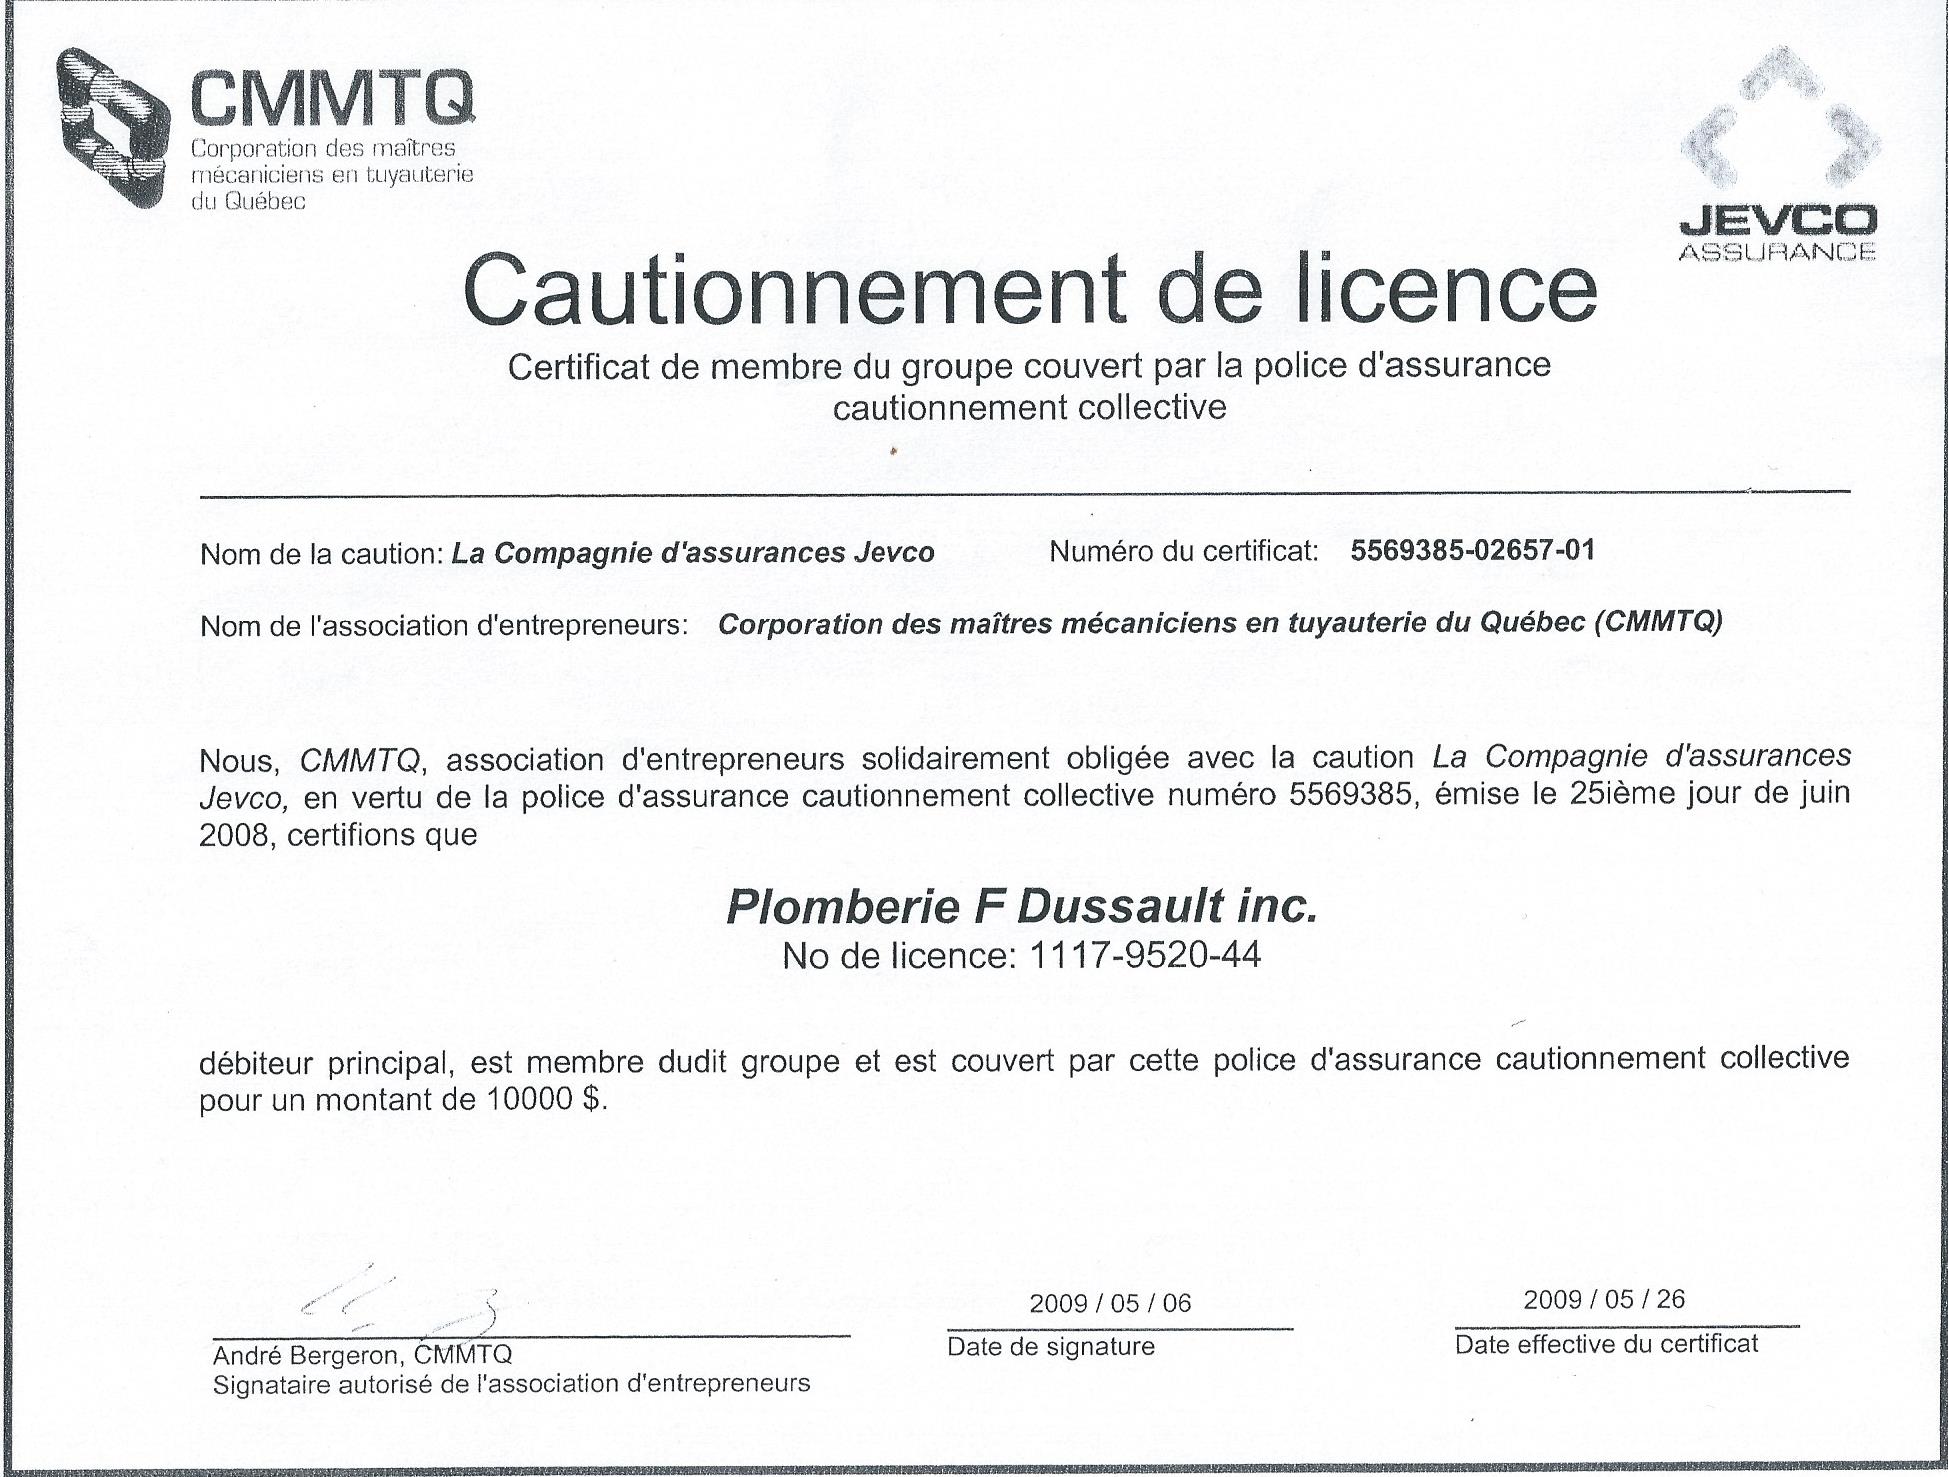 Corporation des maîtres mécaniciens en tuyauterie du Québec (CMMTQ)-CAUTIONNEMENT